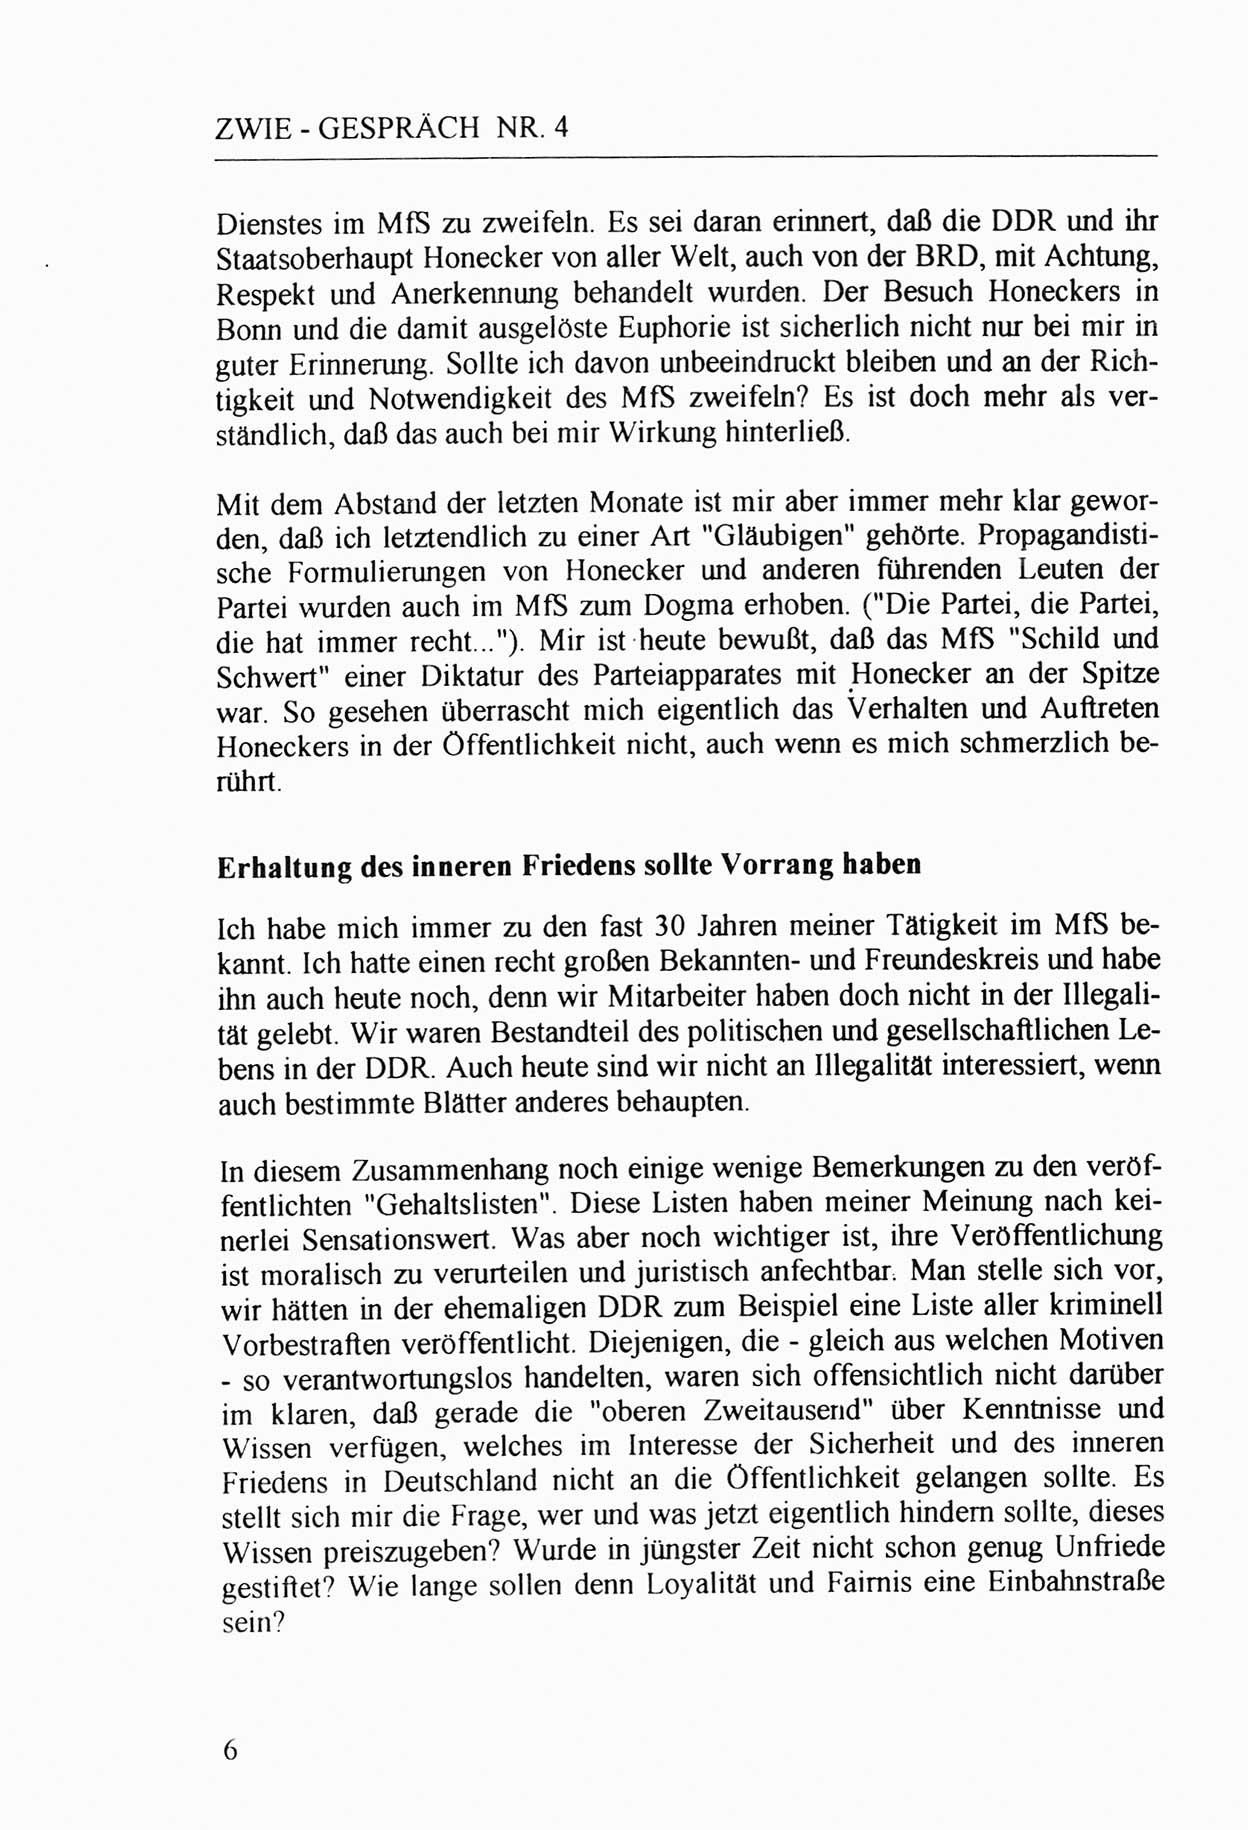 Zwie-Gespräch, Beiträge zur Aufarbeitung der Stasi-Vergangenheit [Deutsche Demokratische Republik (DDR)], Ausgabe Nr. 4, Berlin 1991, Seite 6 (Zwie-Gespr. Ausg. 4 1991, S. 6)